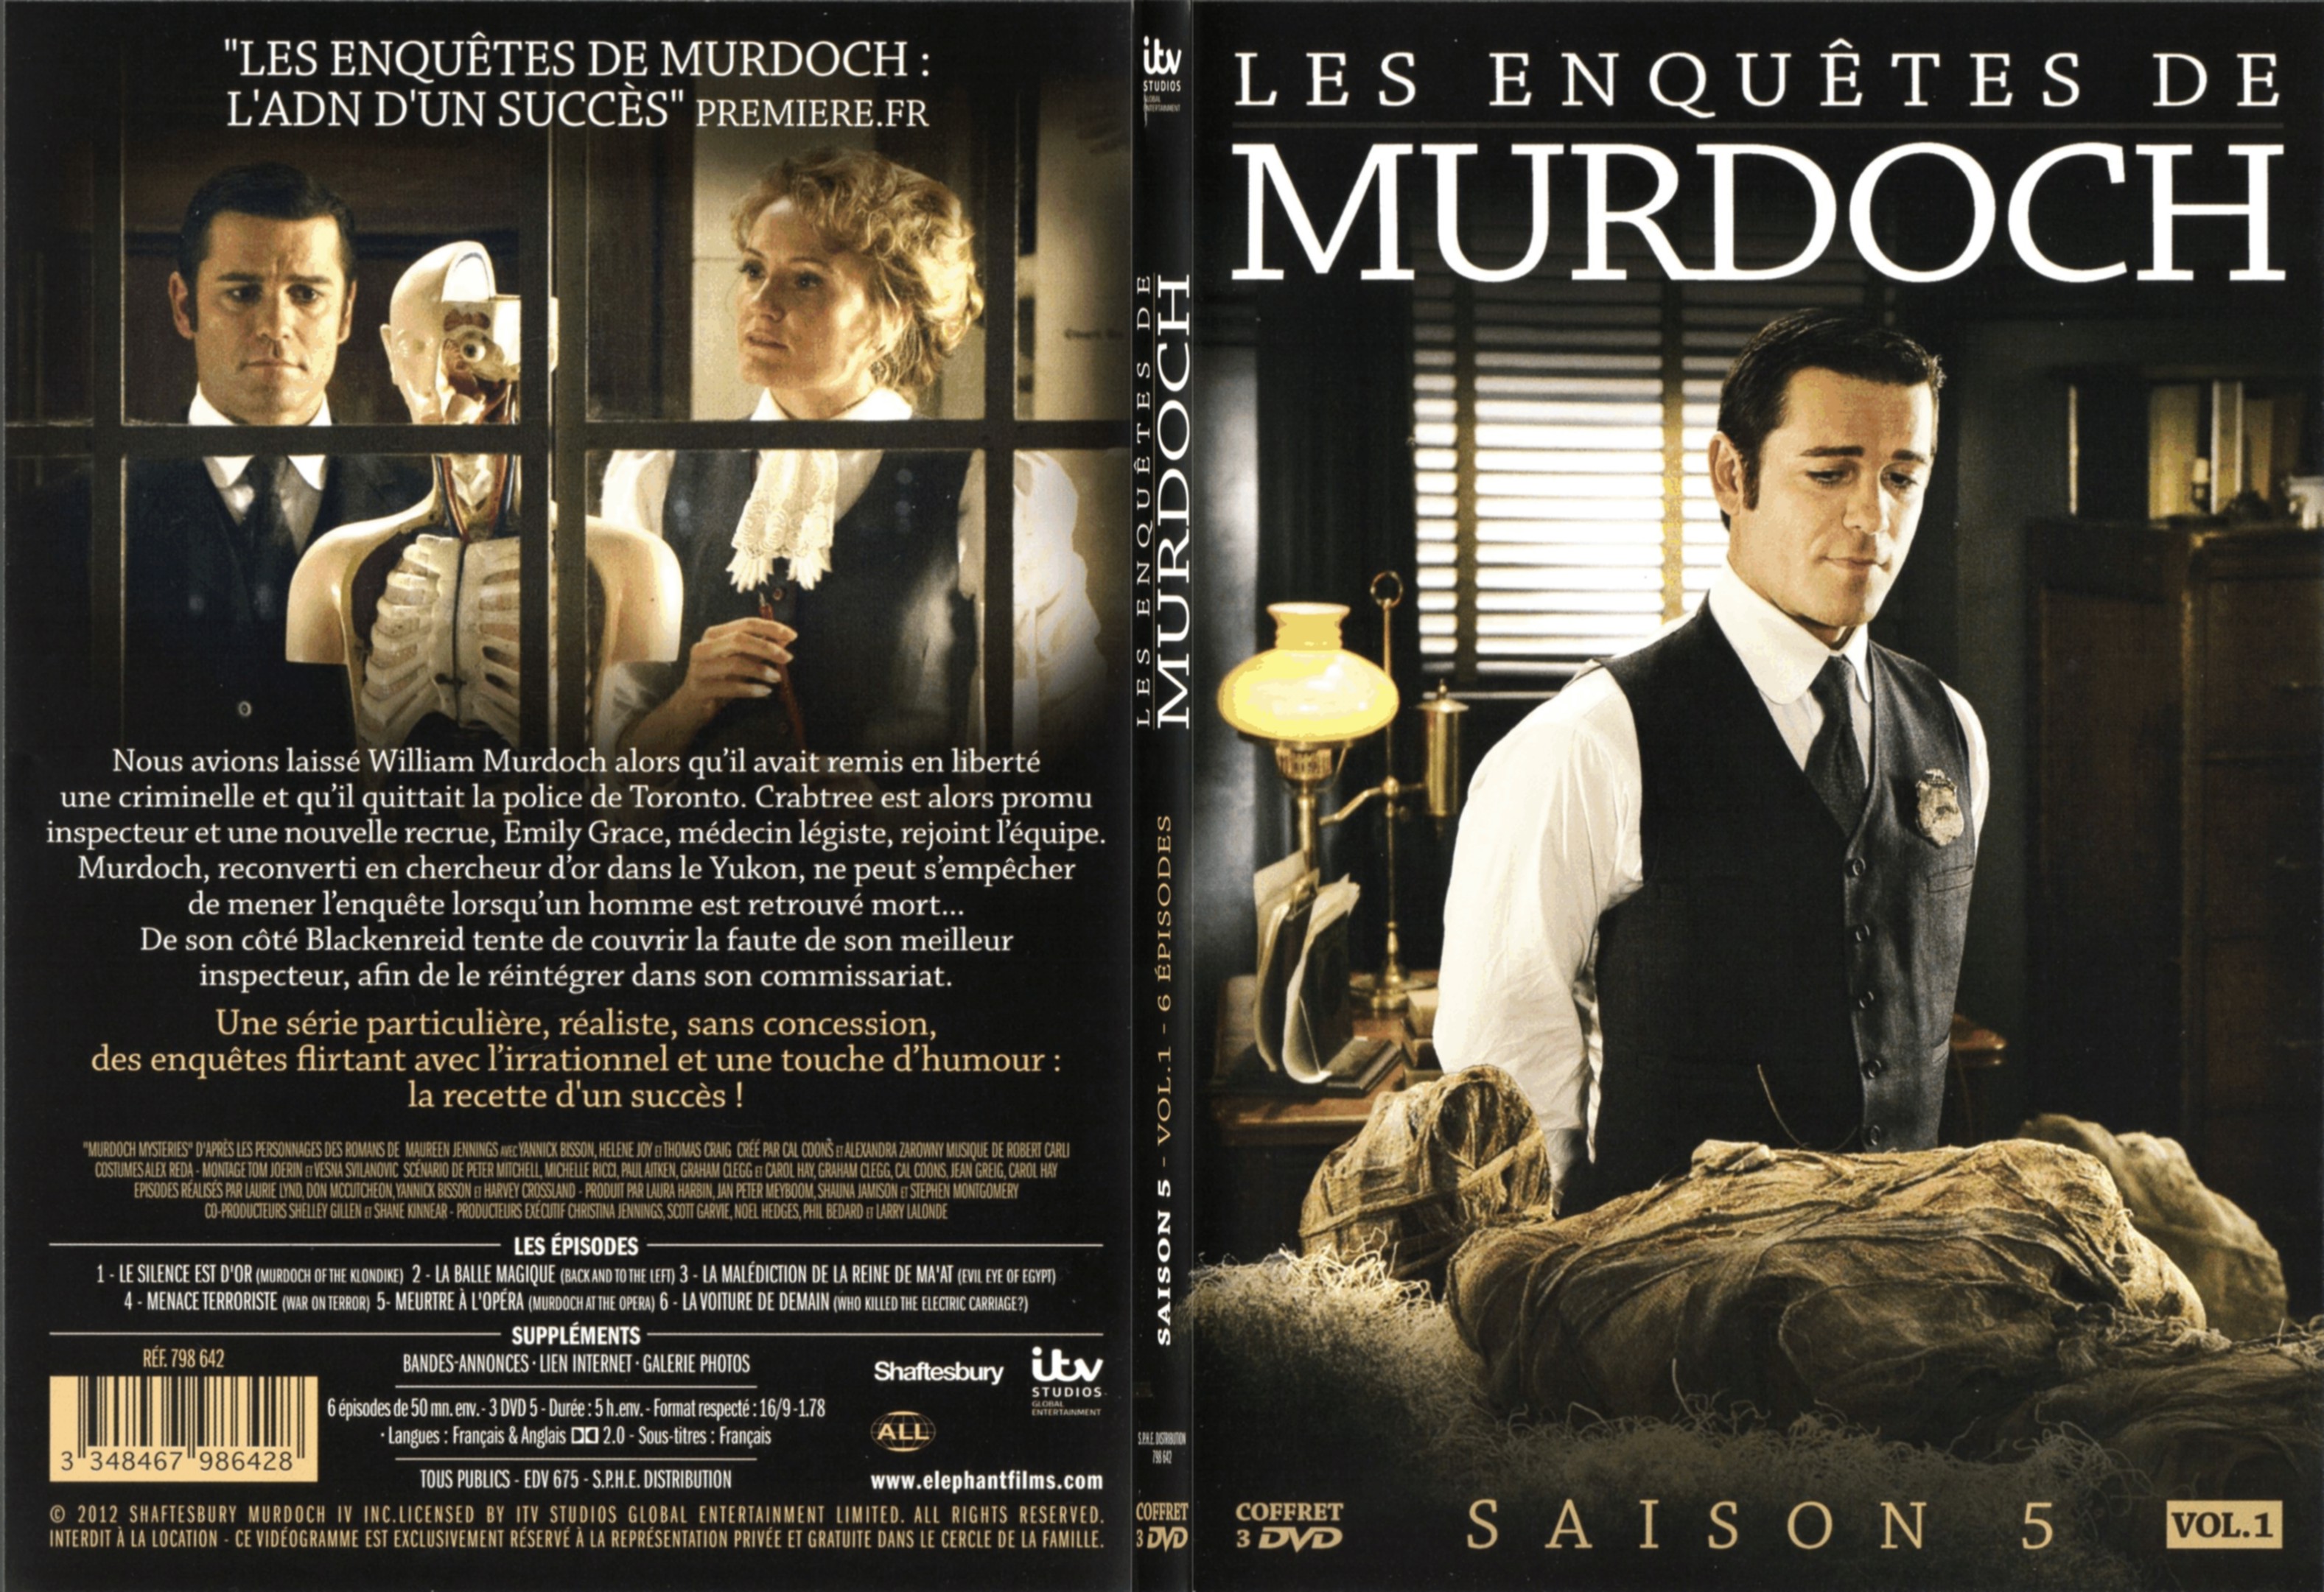 Jaquette DVD Les enqutes de Murdoch Saison 5 vol 01 - SLIM